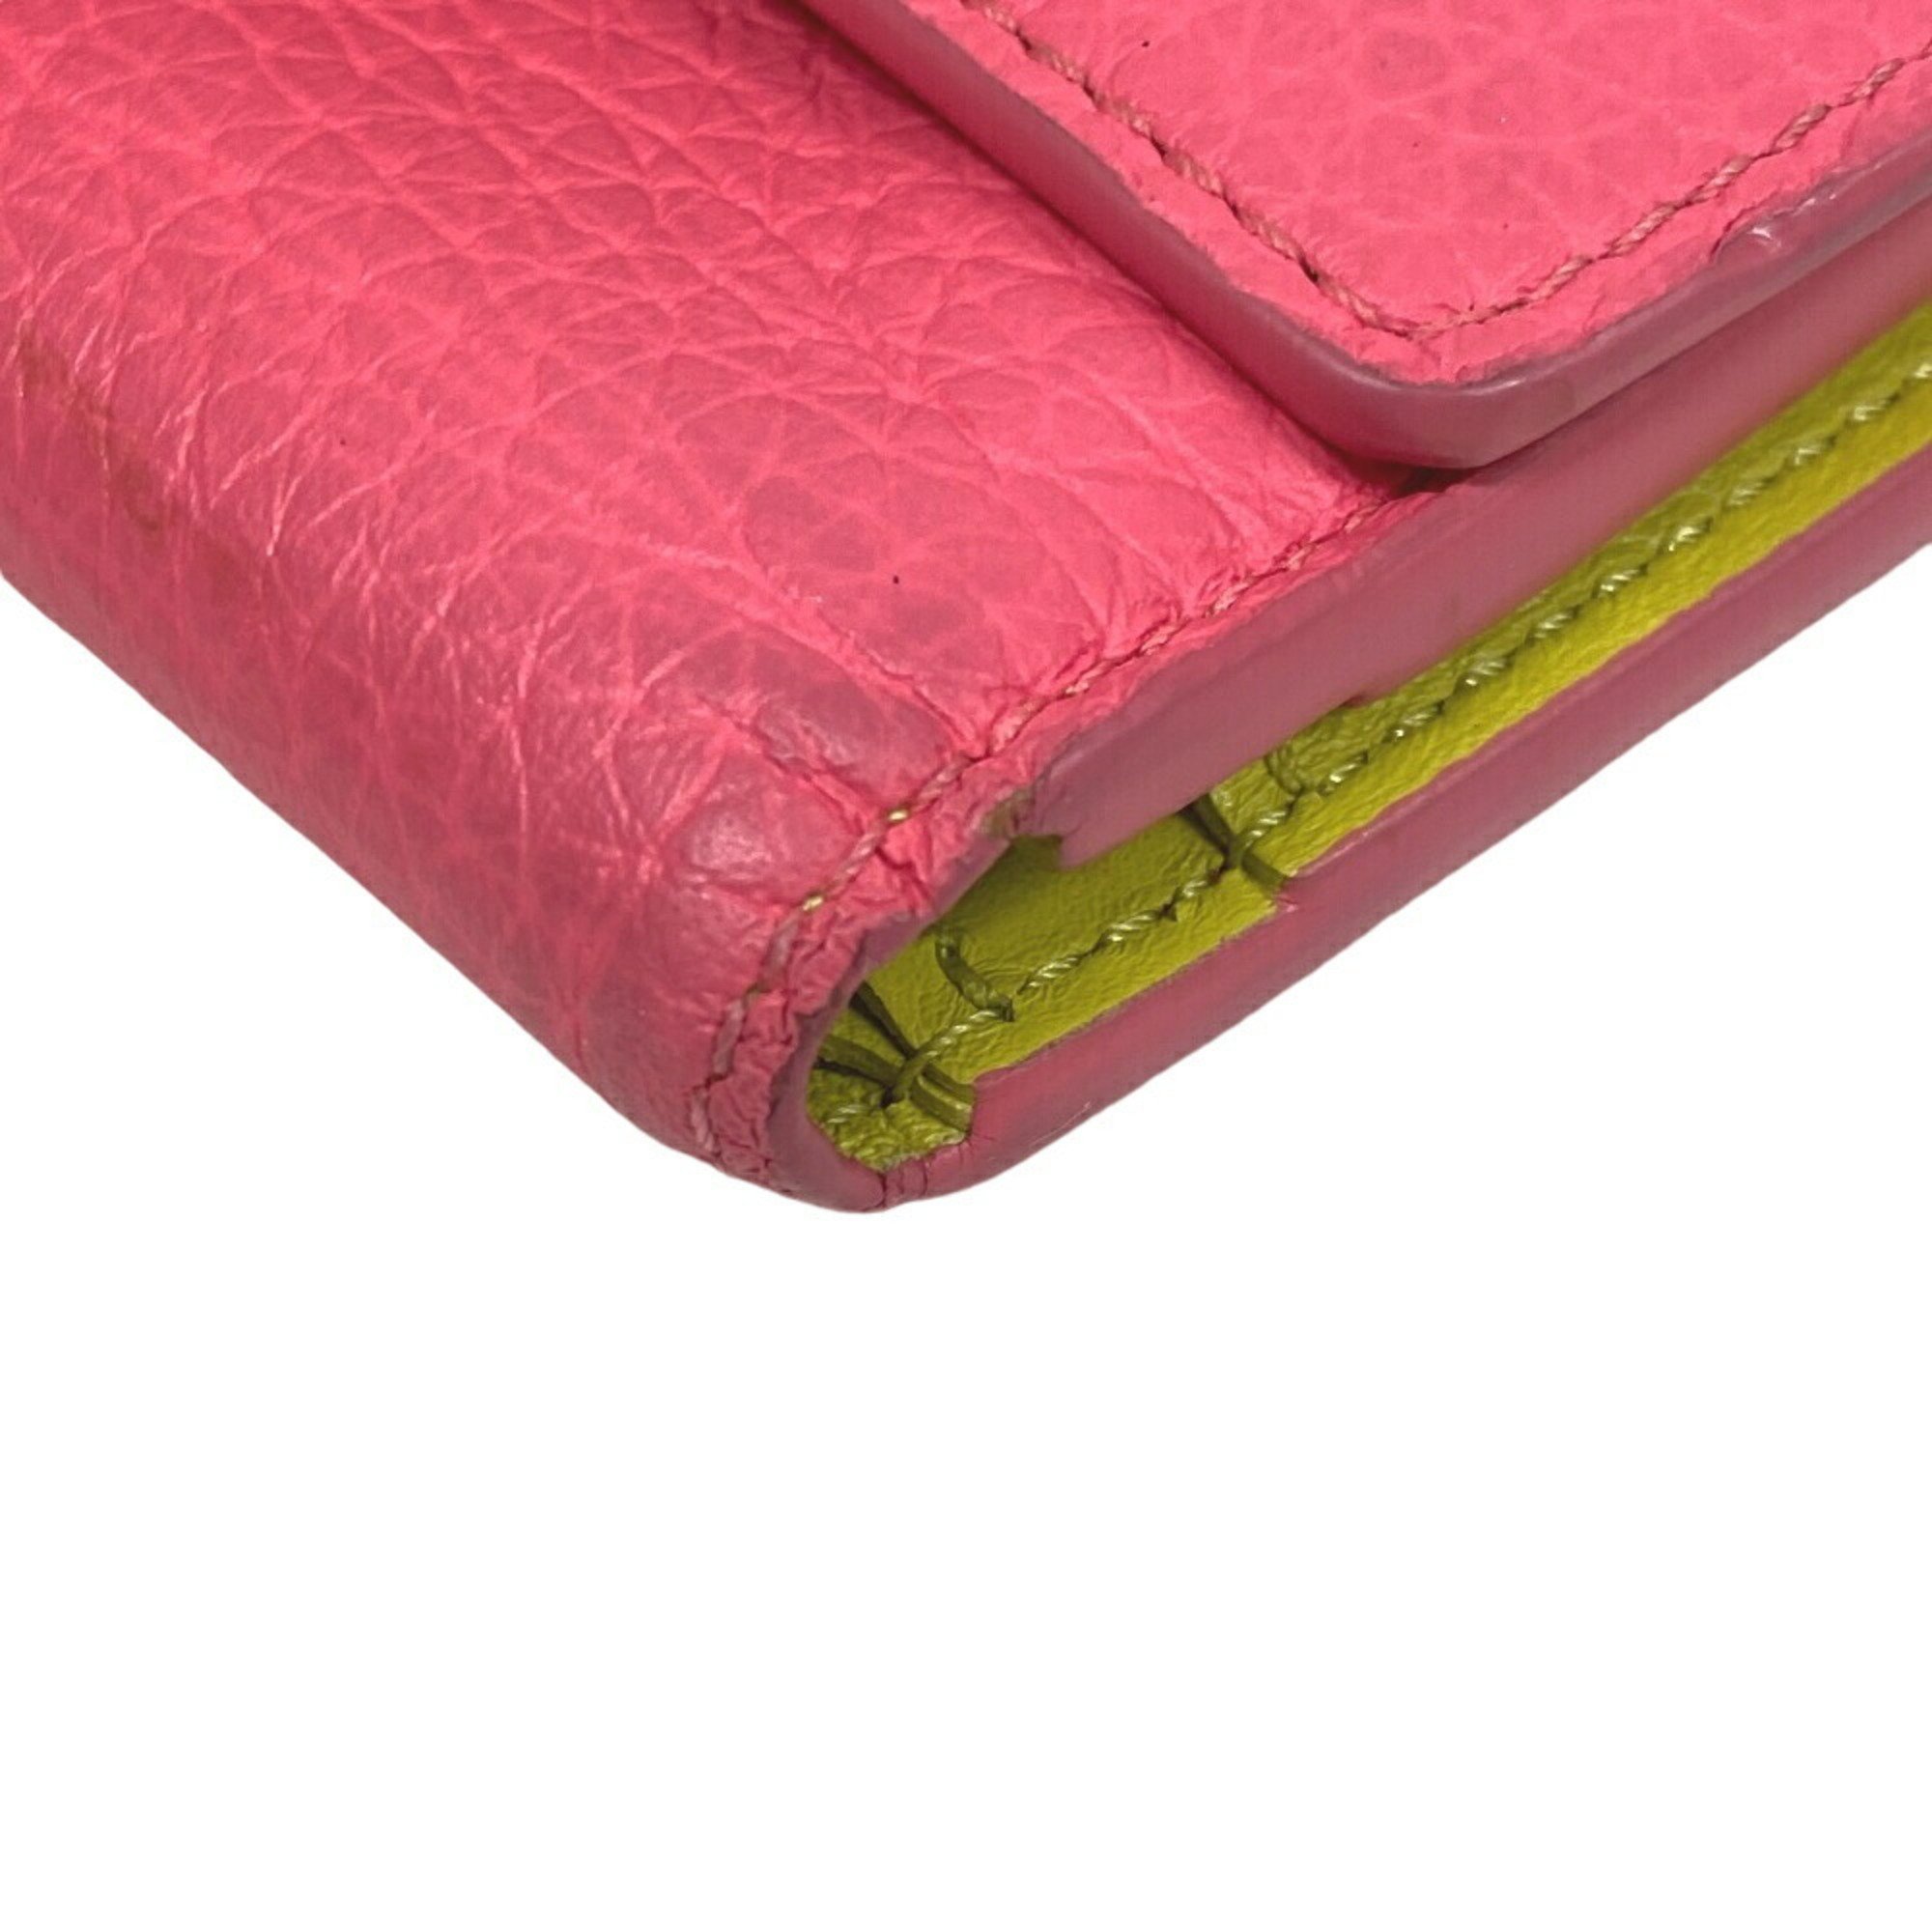 LOUIS VUITTON M81203 Portefeuille Capucines Tri-fold Wallet Pink Women's